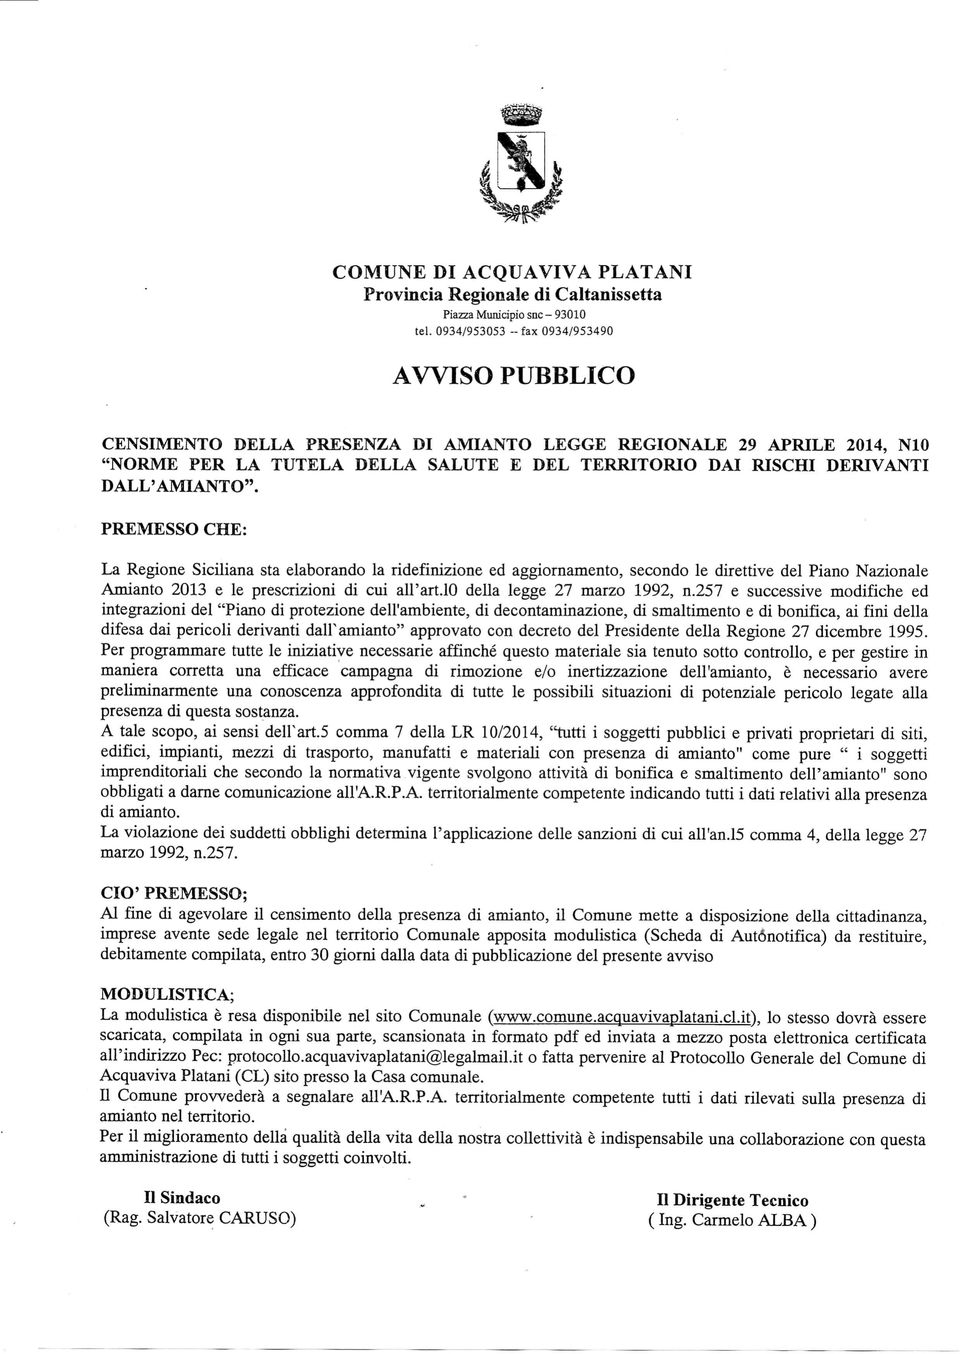 DALL'AMIANTO". PREMESSO CHE: La Regione Siciliana sta elaborando la ridefinizione ed aggiornamento, secondo le direttive del Piano Nazionale Amianto 2013 e le prescrizioni di cui all'art.